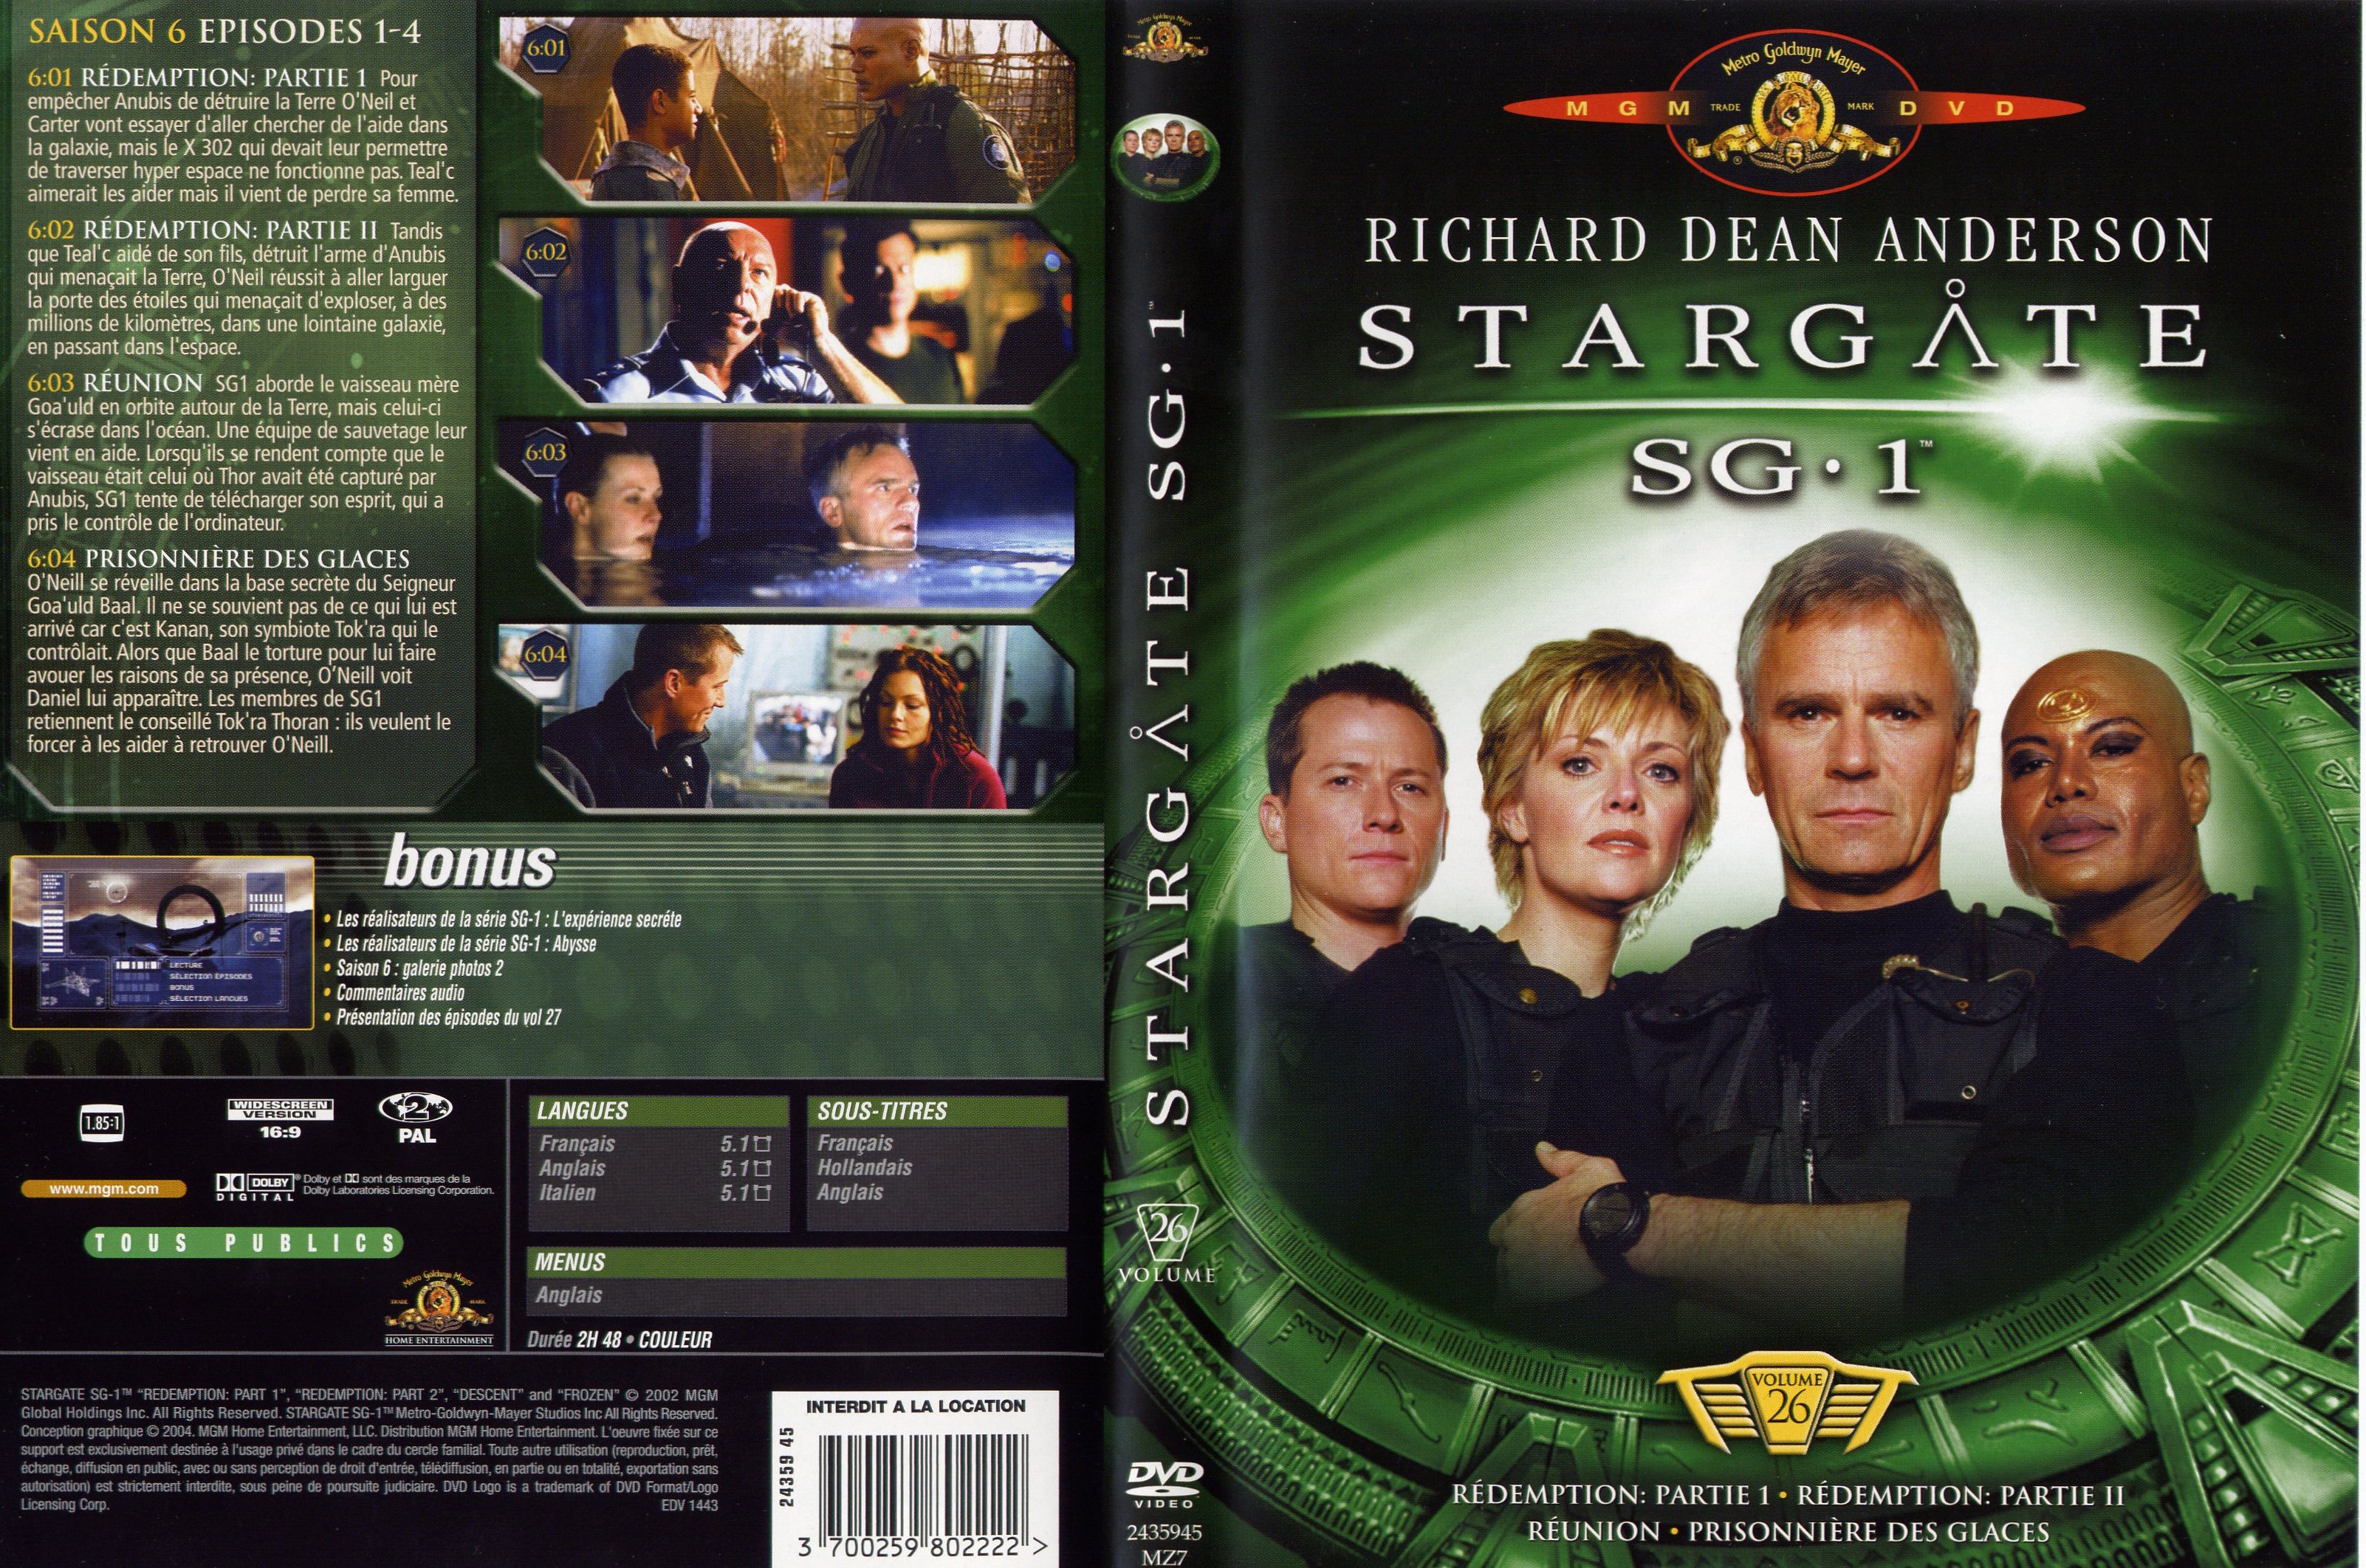 Jaquette DVD Stargate SG1 vol 26 v2